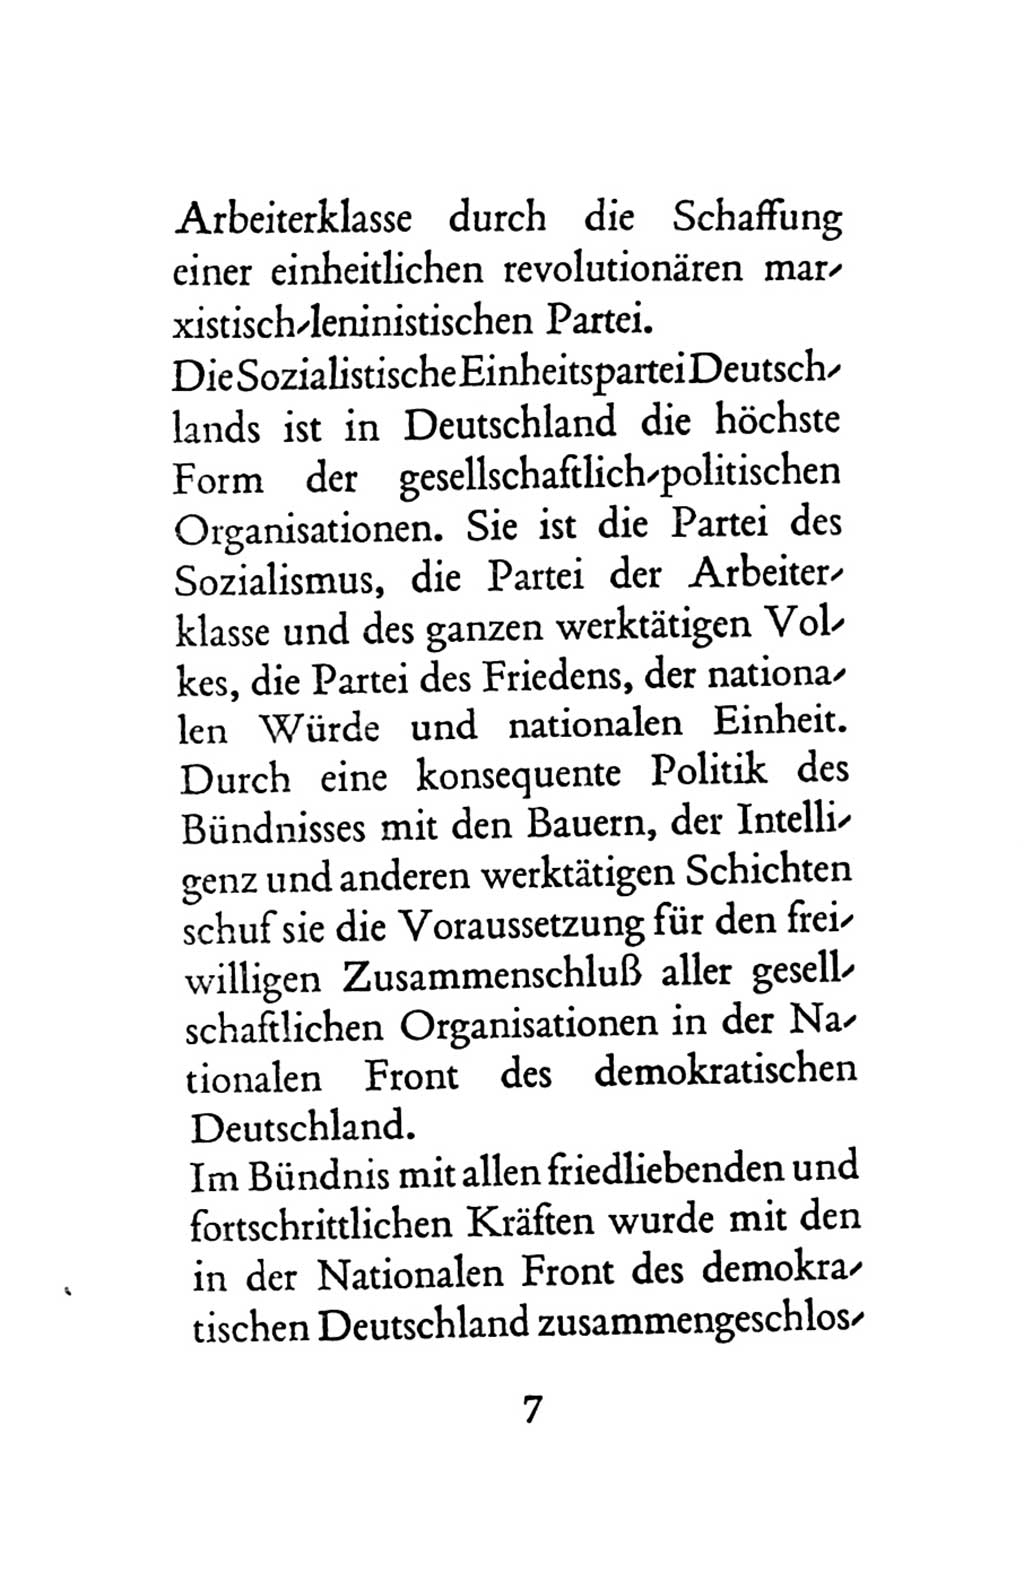 Statut der Sozialistischen Einheitspartei Deutschlands (SED) 1963, Seite 7 (St. SED DDR 1963, S. 7)